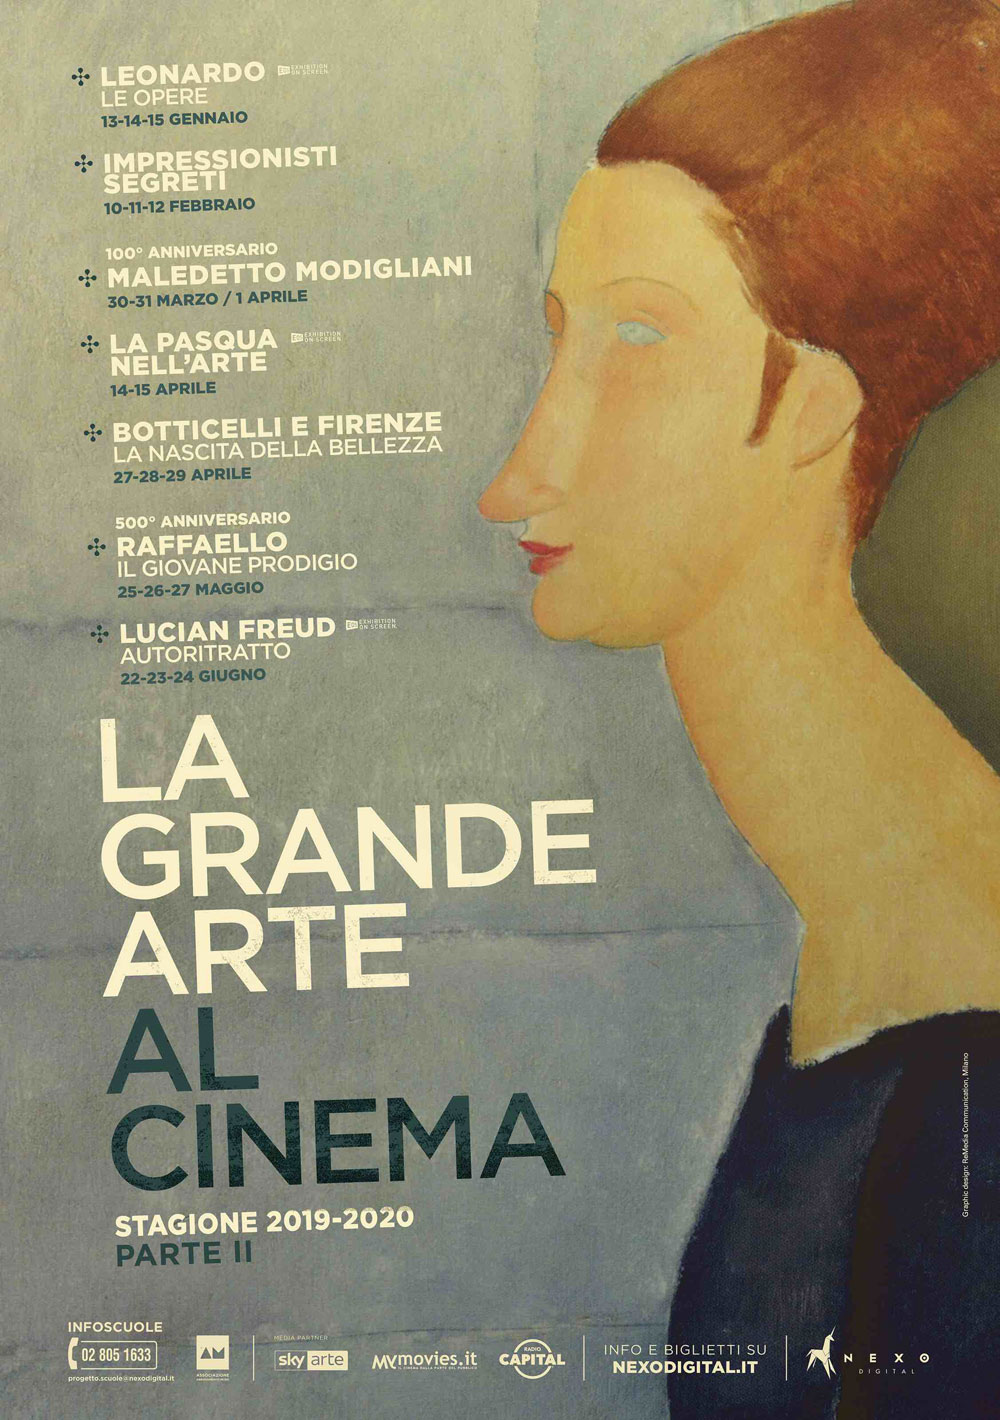 Presentata la stagione 2020 de La Grande Arte al Cinema: da Leonardo agli impressionisti, da Botticelli a Raffaello a Lucian Freud